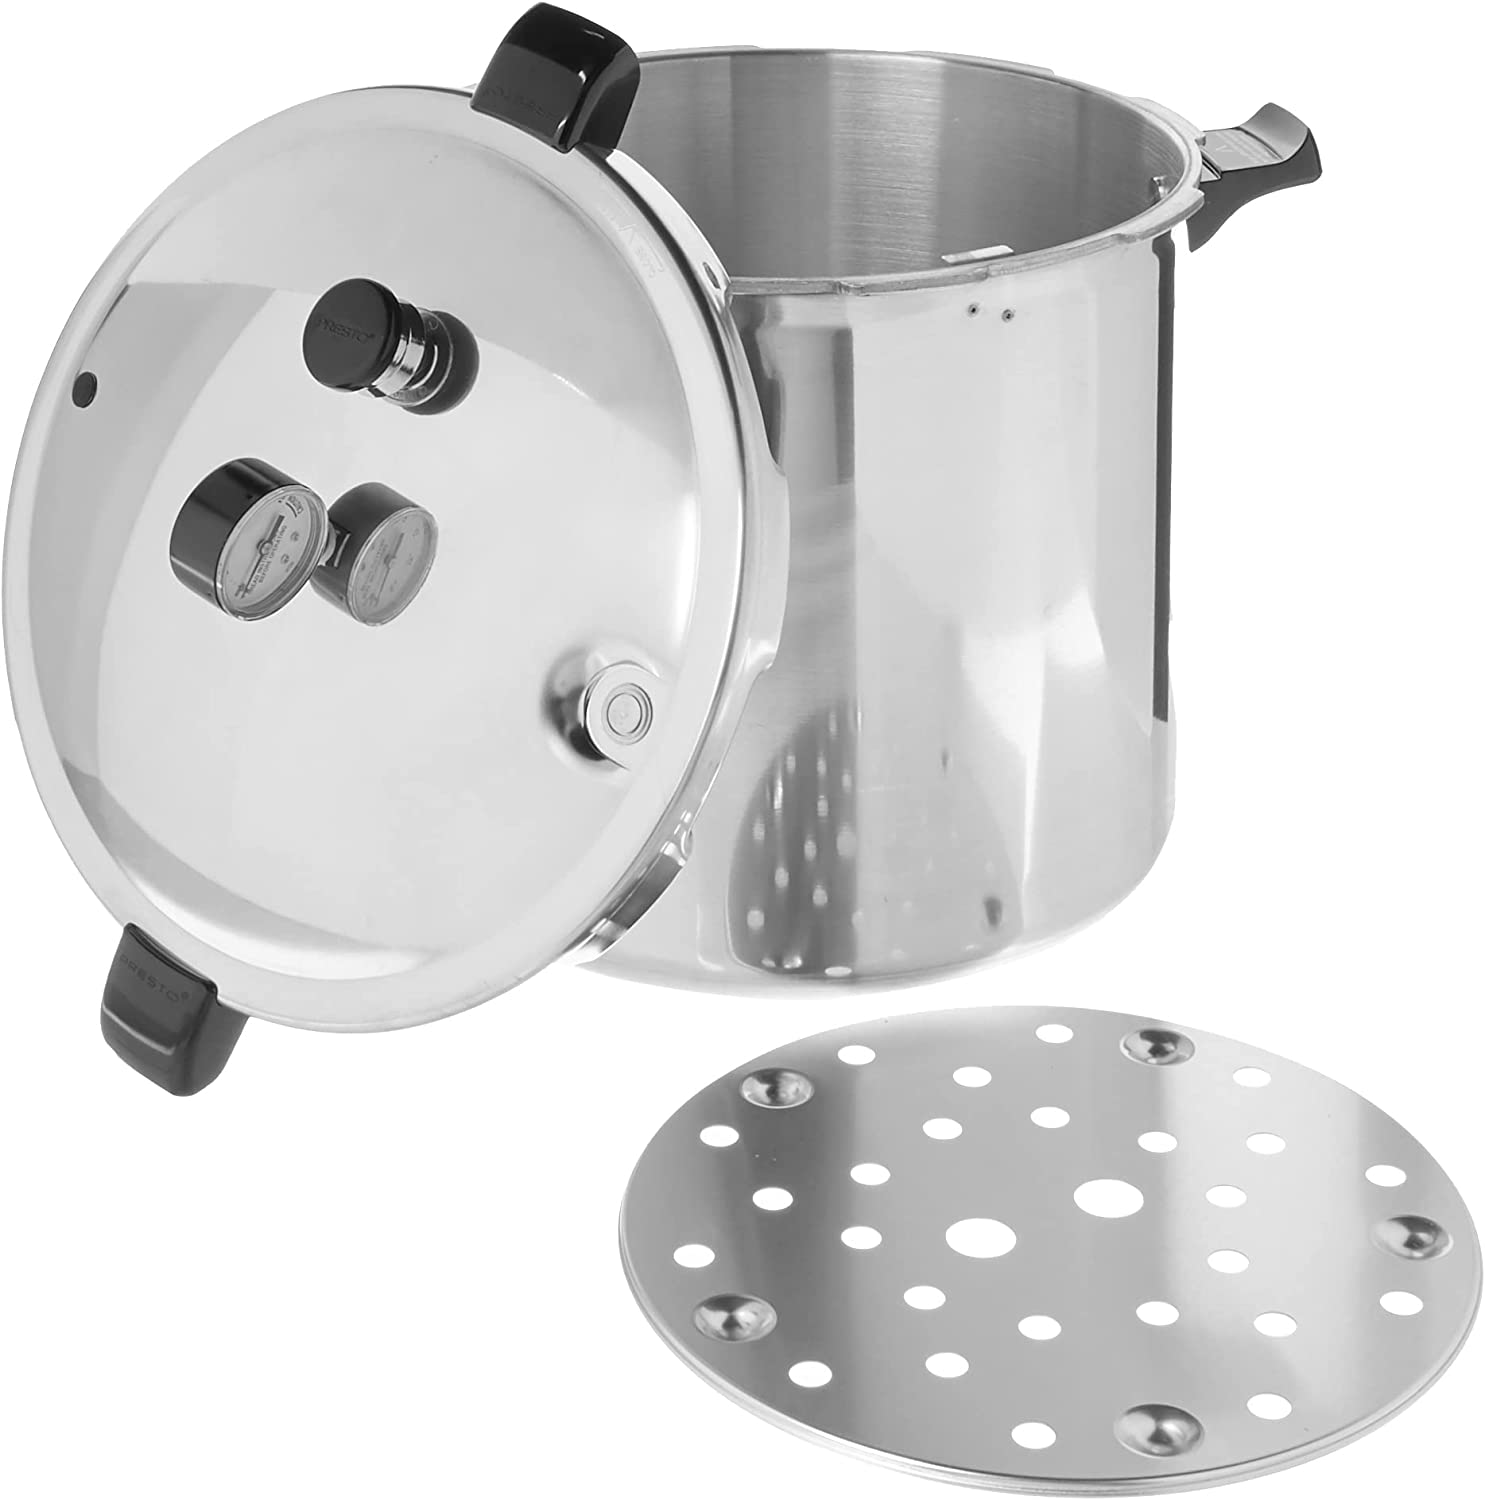 Presto 01282 8-Quart Aluminum Pressure Cooker